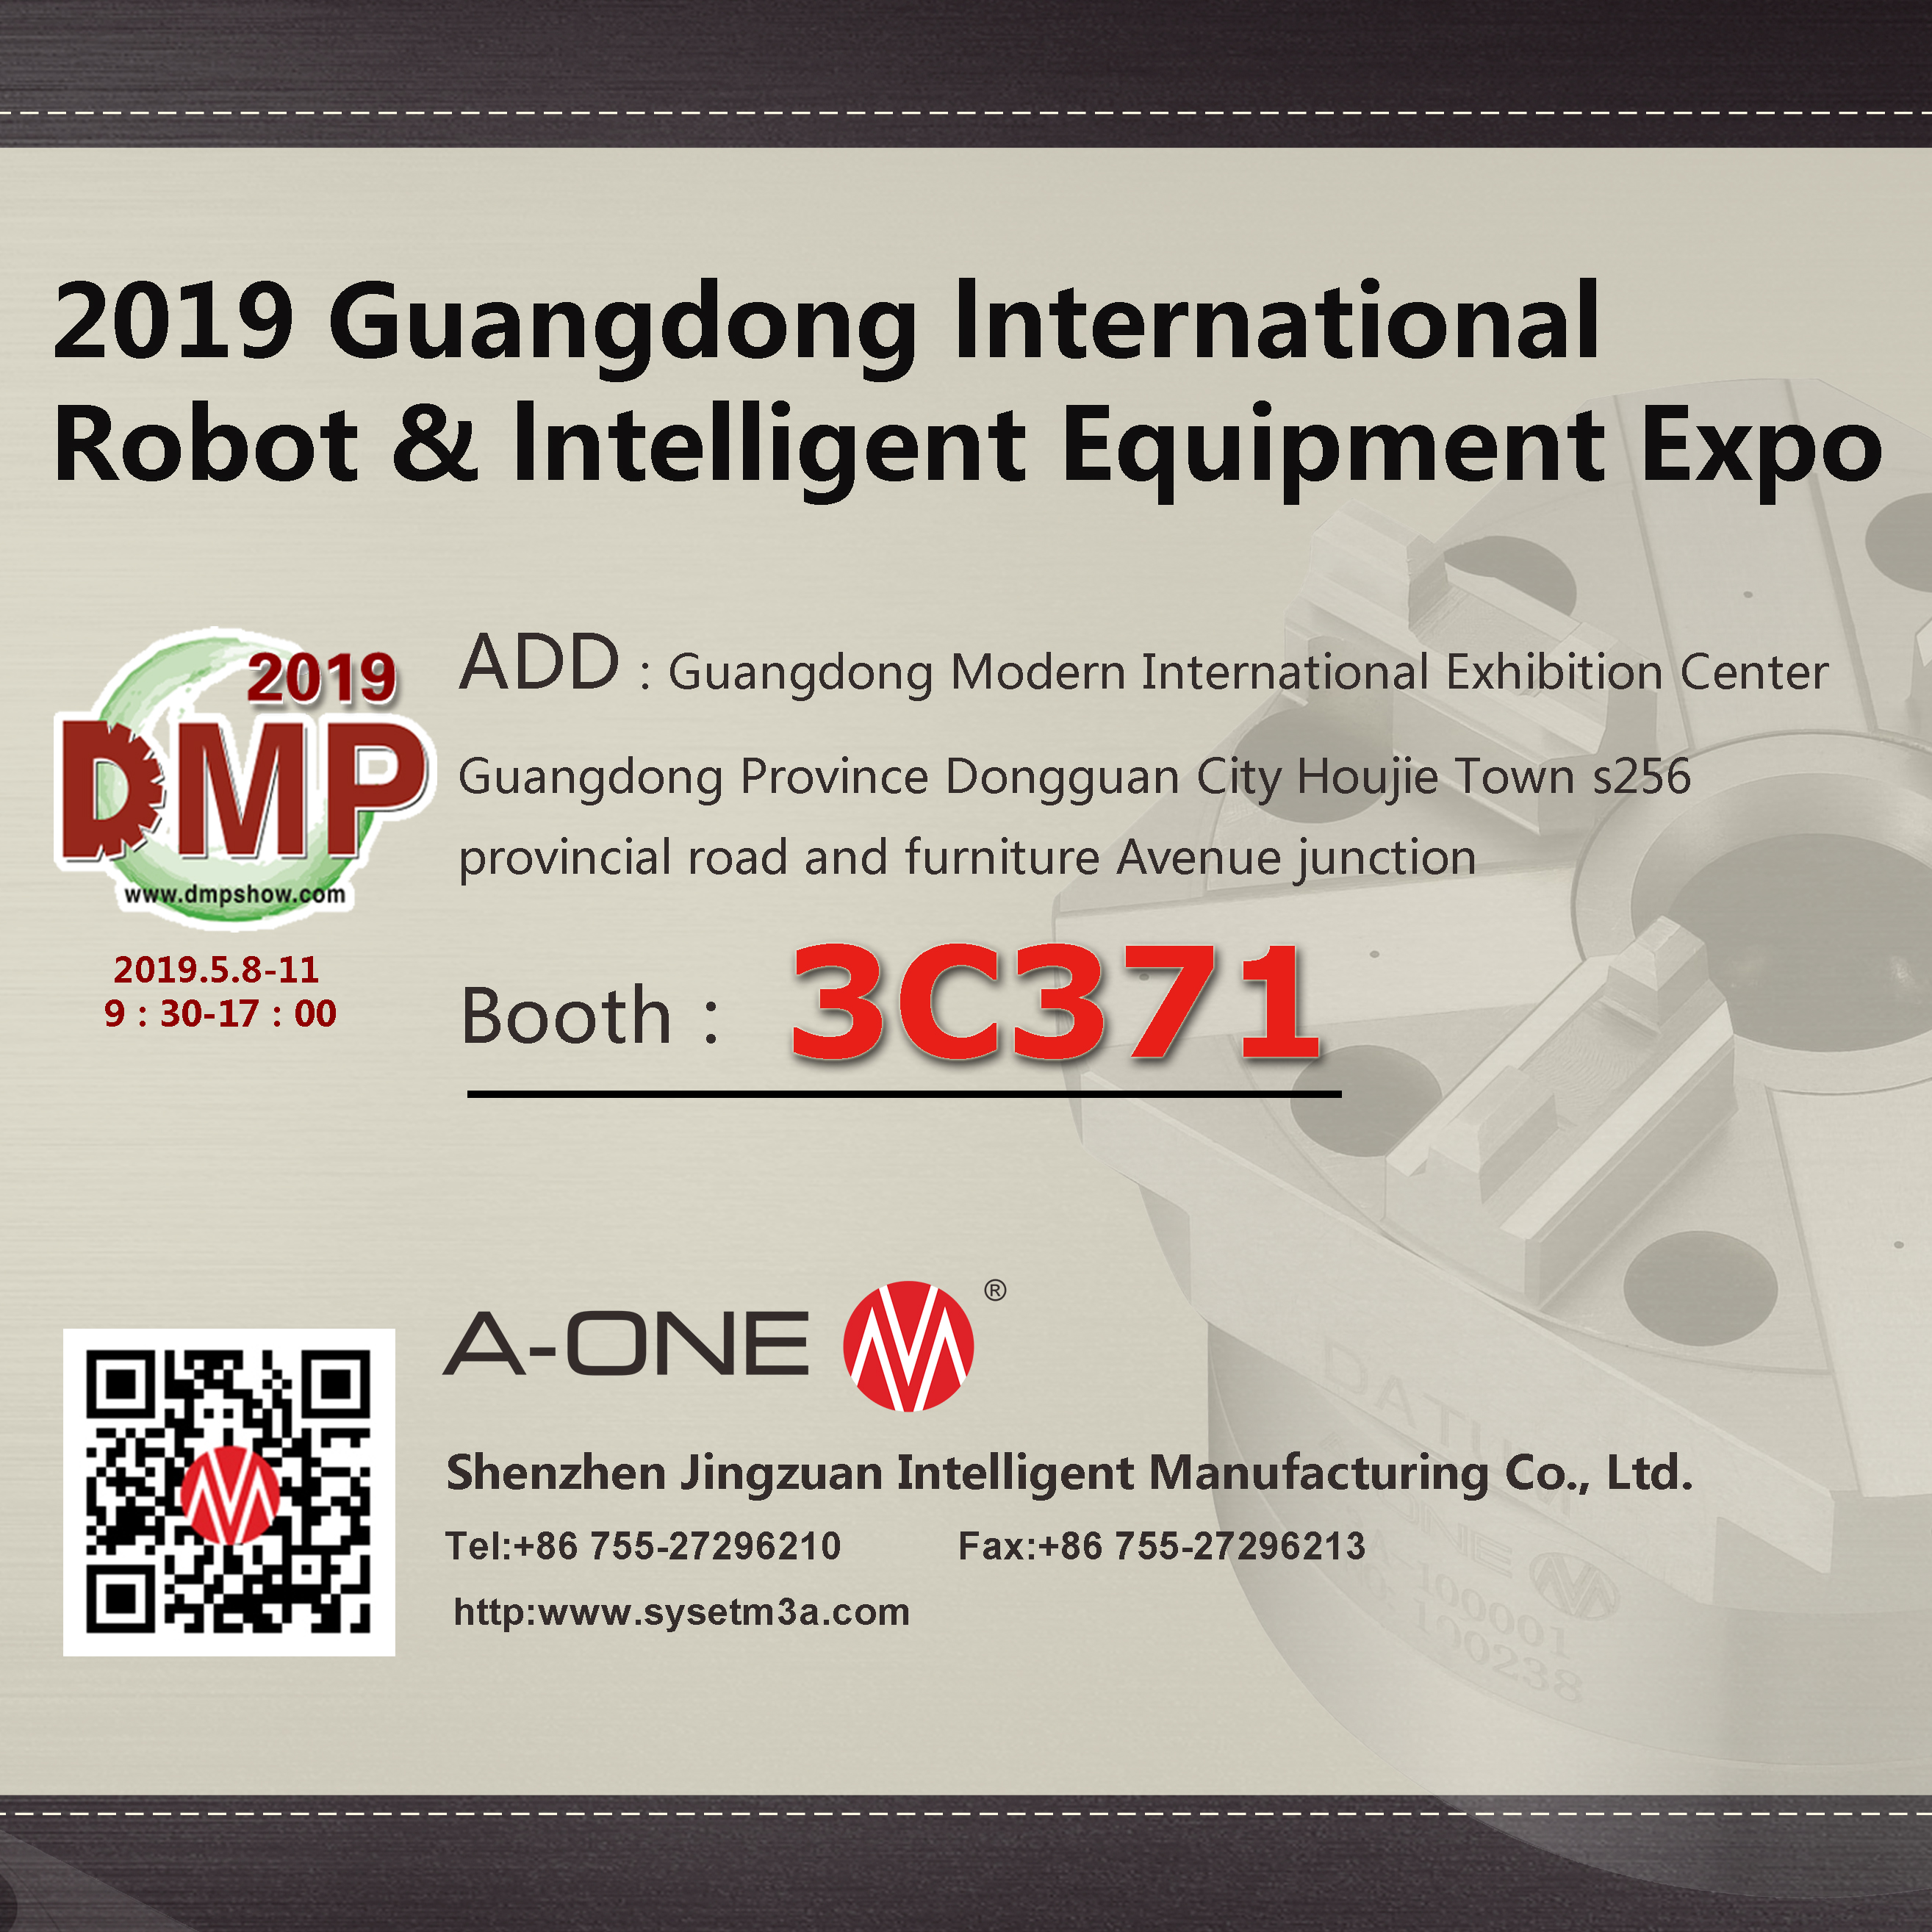 DMC 2019 Guangdong lnternational Robot & lntelligent Equipment Expo